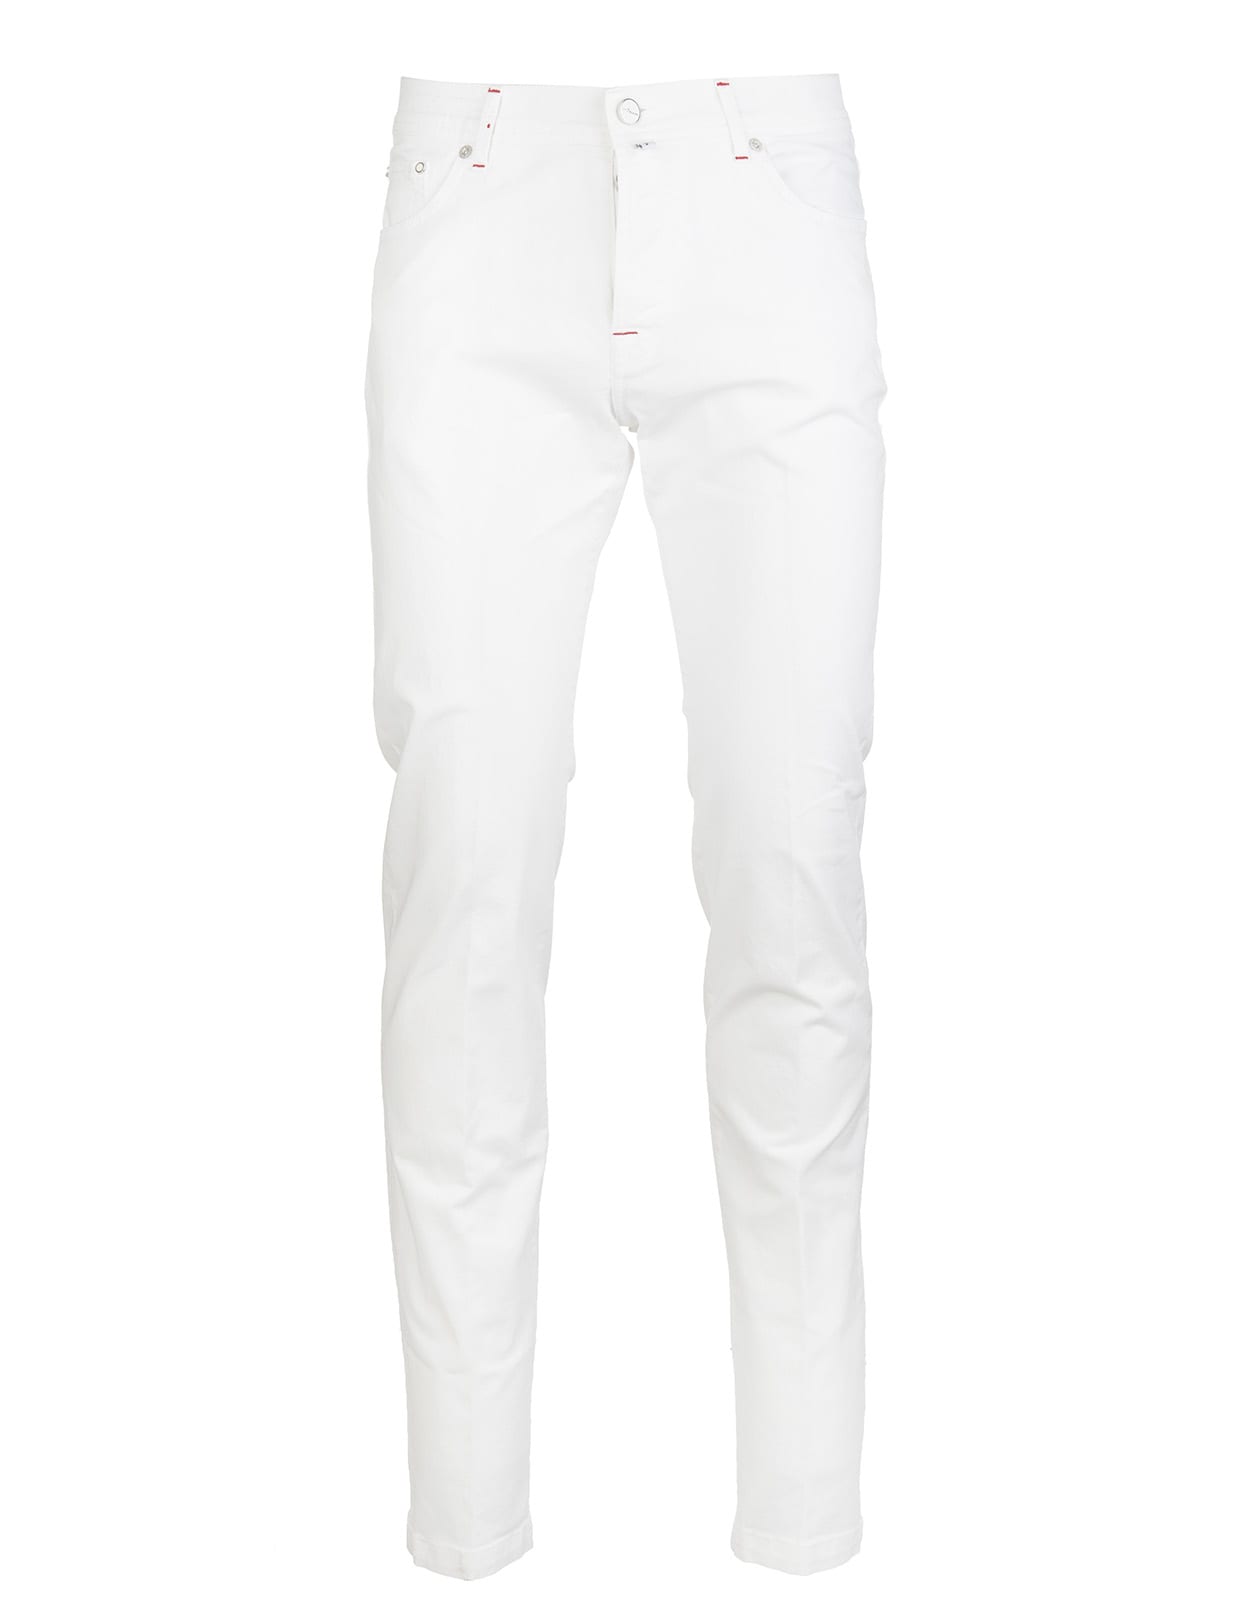 Kiton white trousers